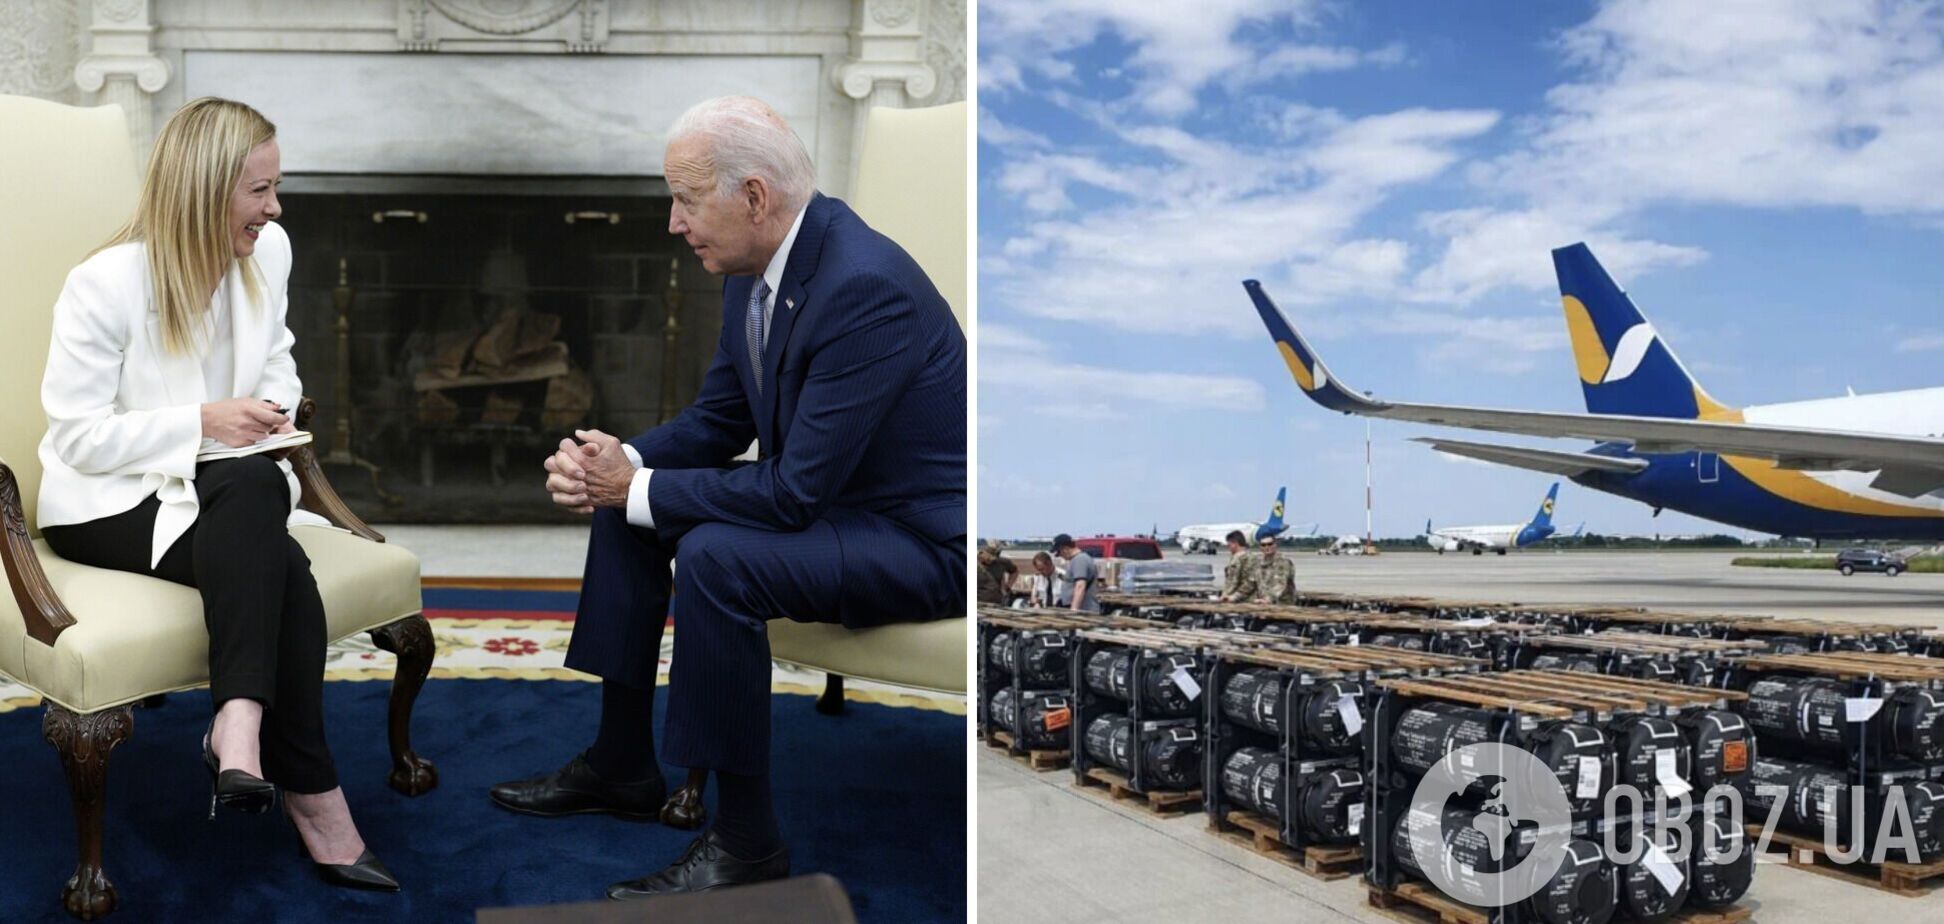 Байден и Мелони в Вашингтоне обсудили помощь Украине: о чем договорились